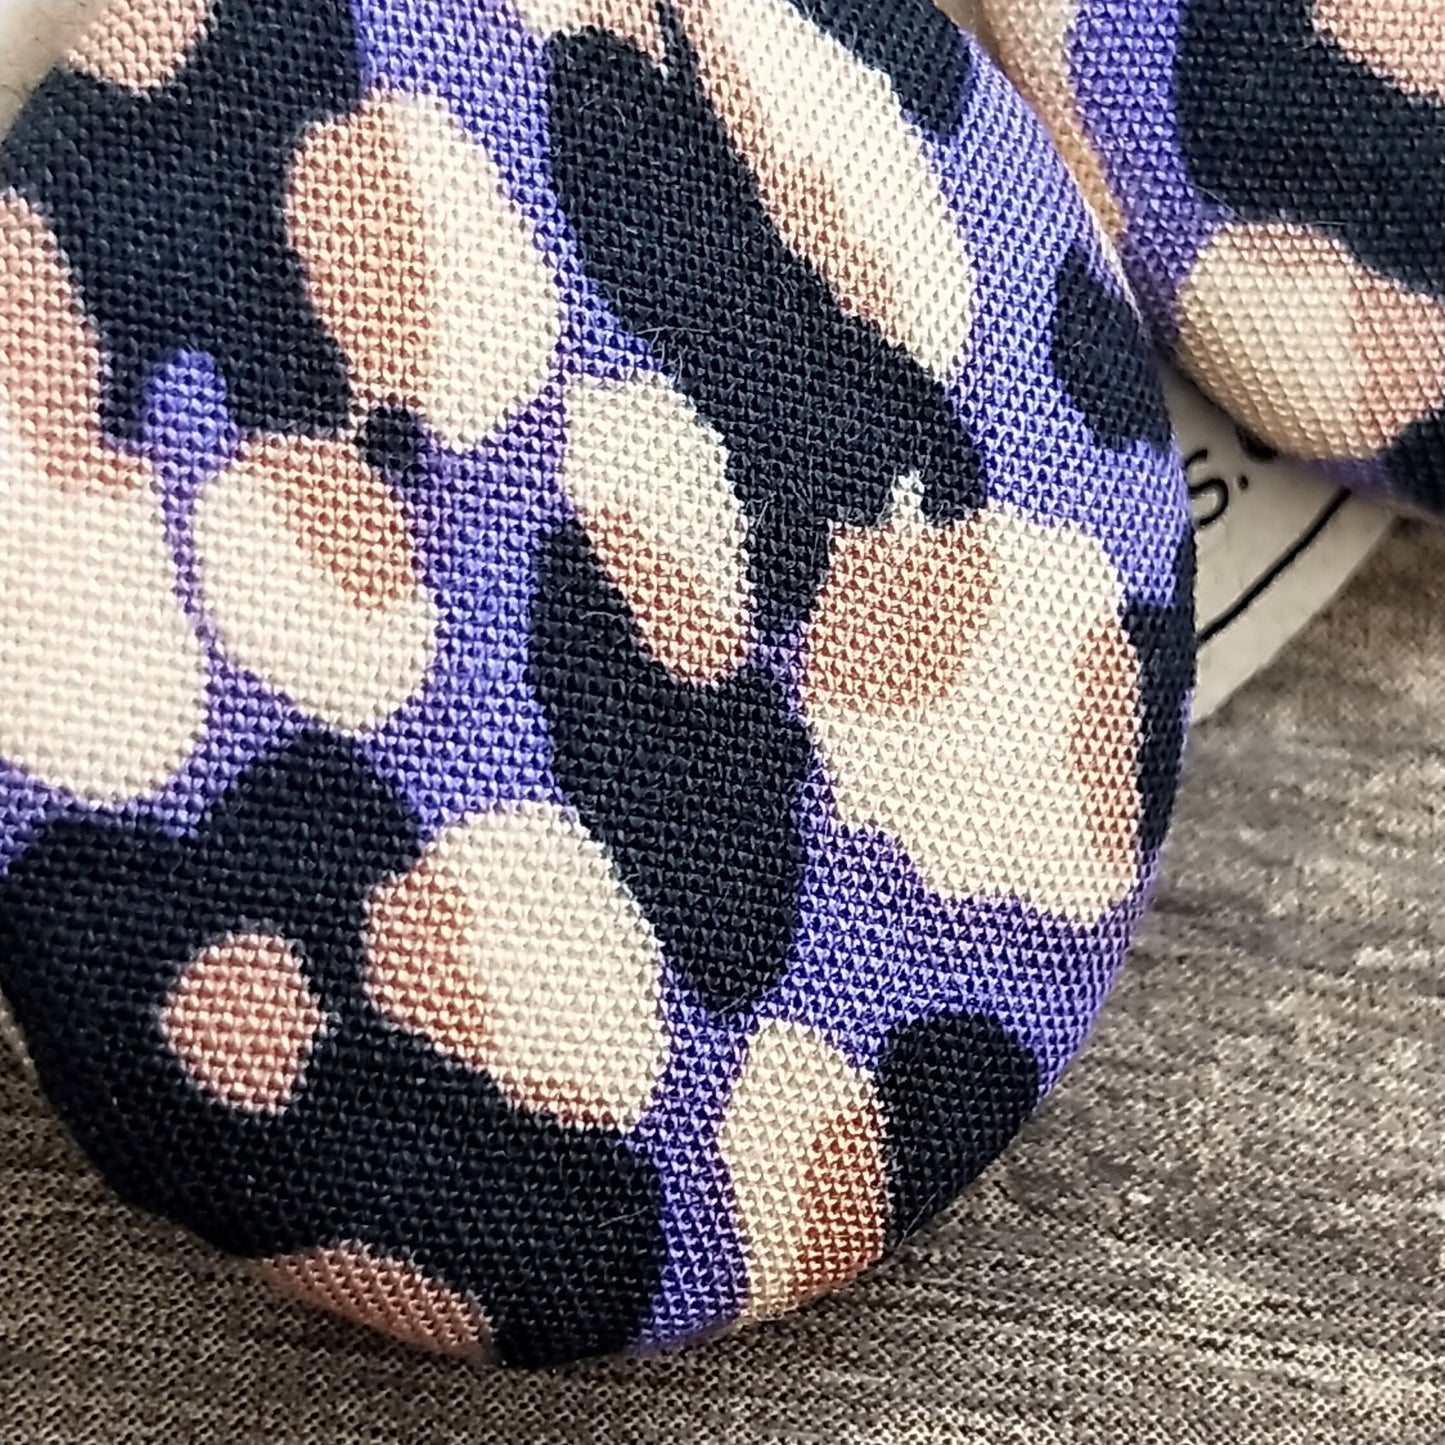 Wildears Fabric Covered Button Earrings Purple Tan Leopard 27mm